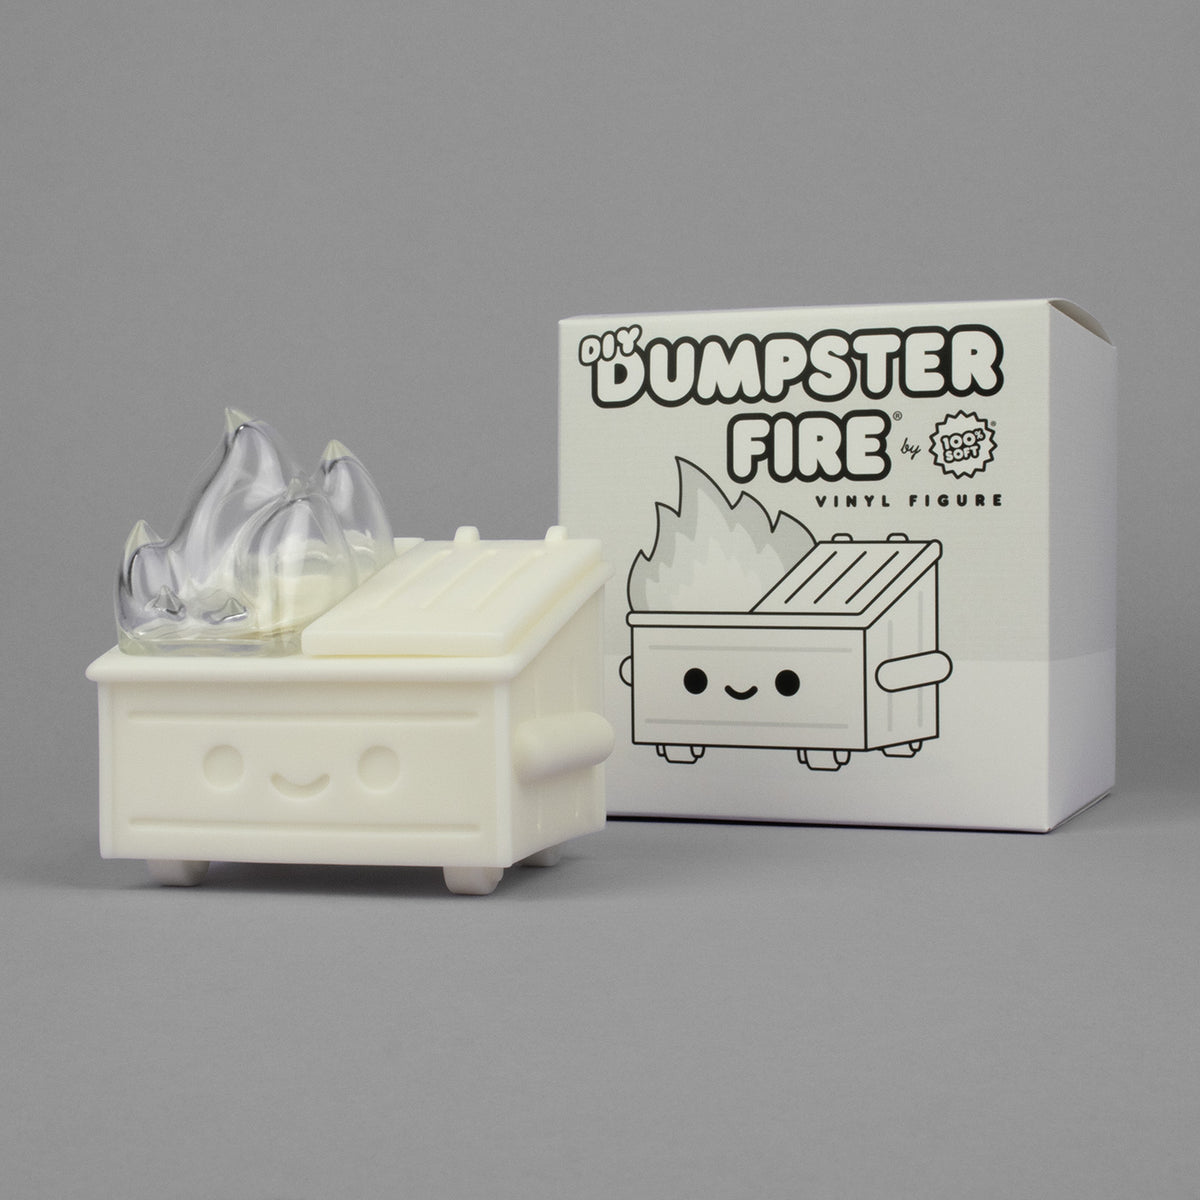 Dumpster Fire Vinyl Figure - DIY